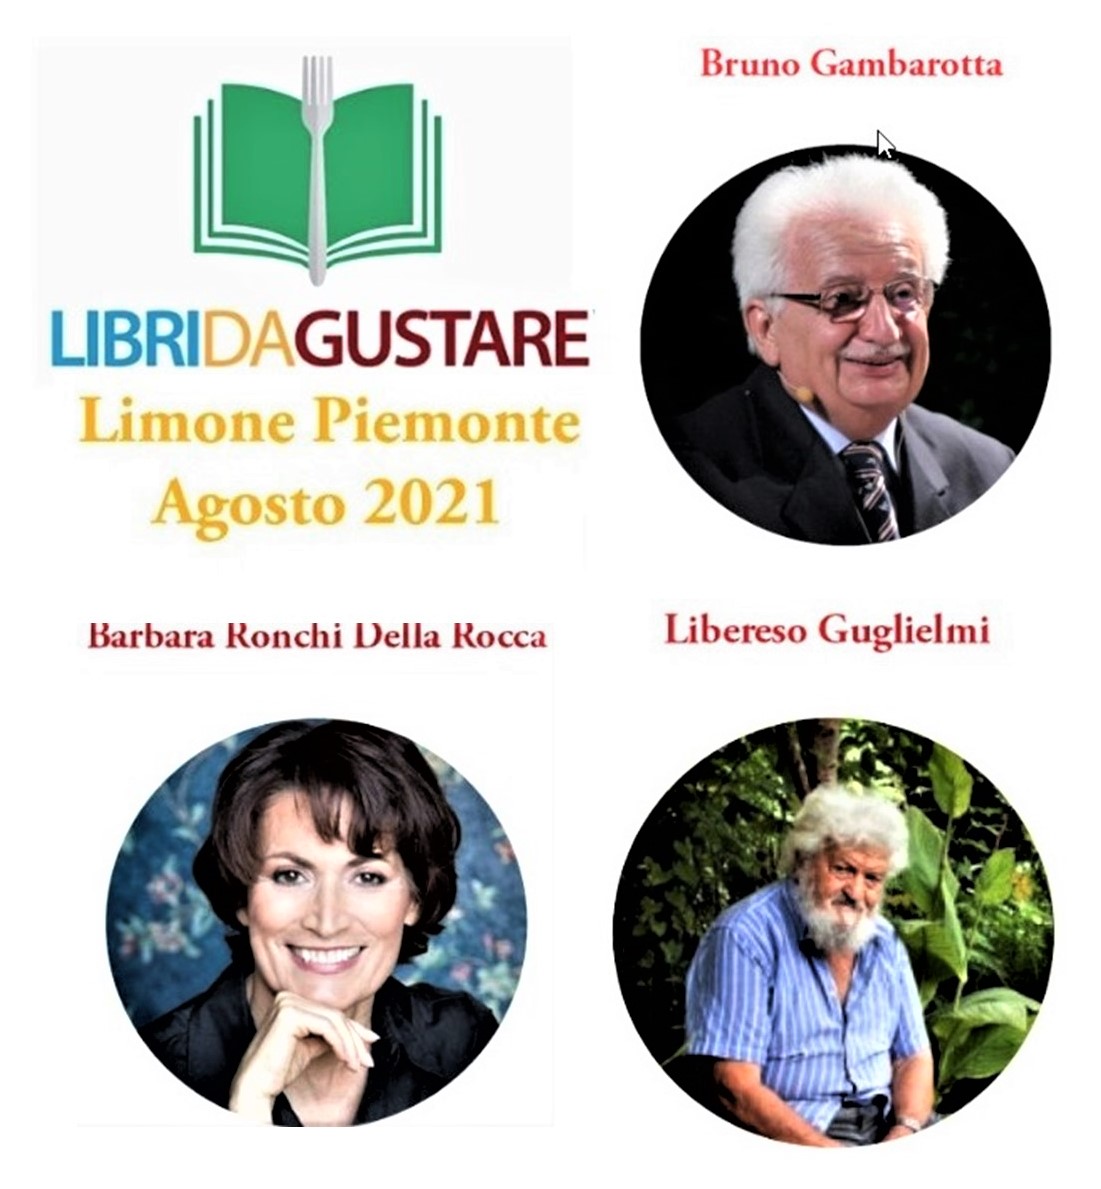 Libri da gustare a Limone Piemonte